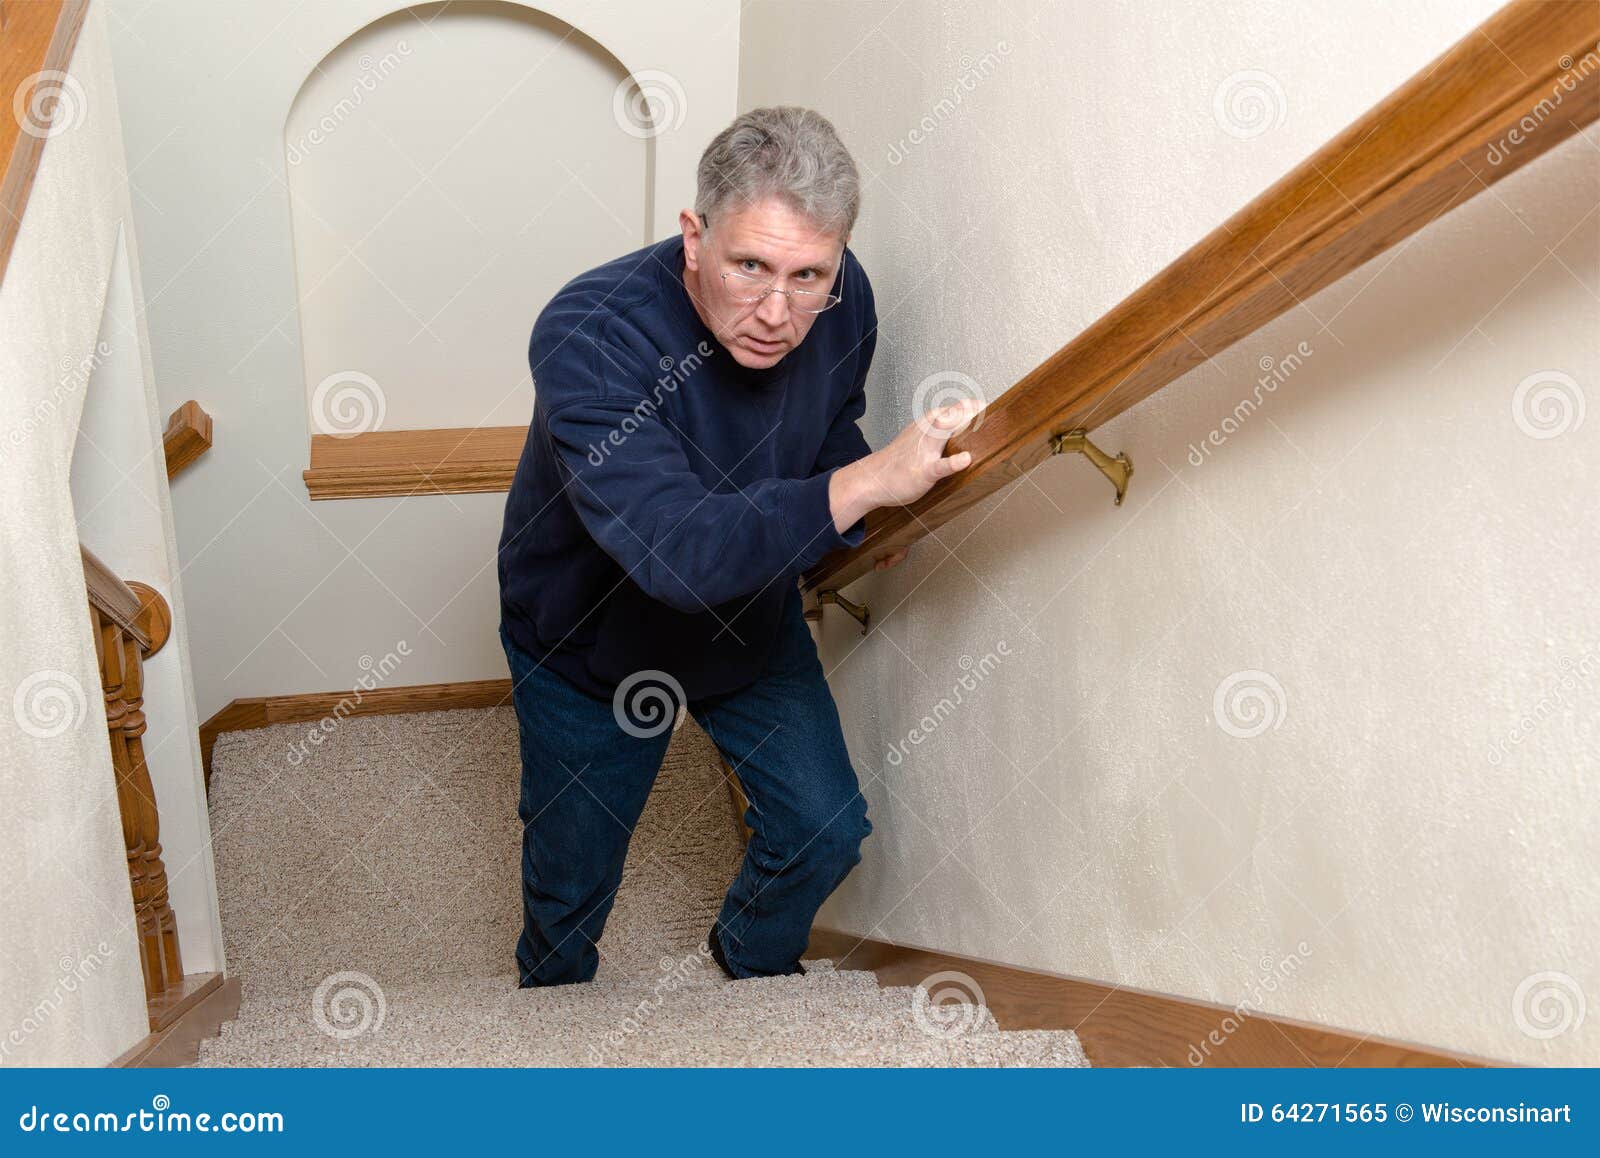 Escadas idosas da escalada do homem, assustado, confusas. Um ancião idoso está tendo escadas de escalada do problema A escadaria tem-no assustado e confuso